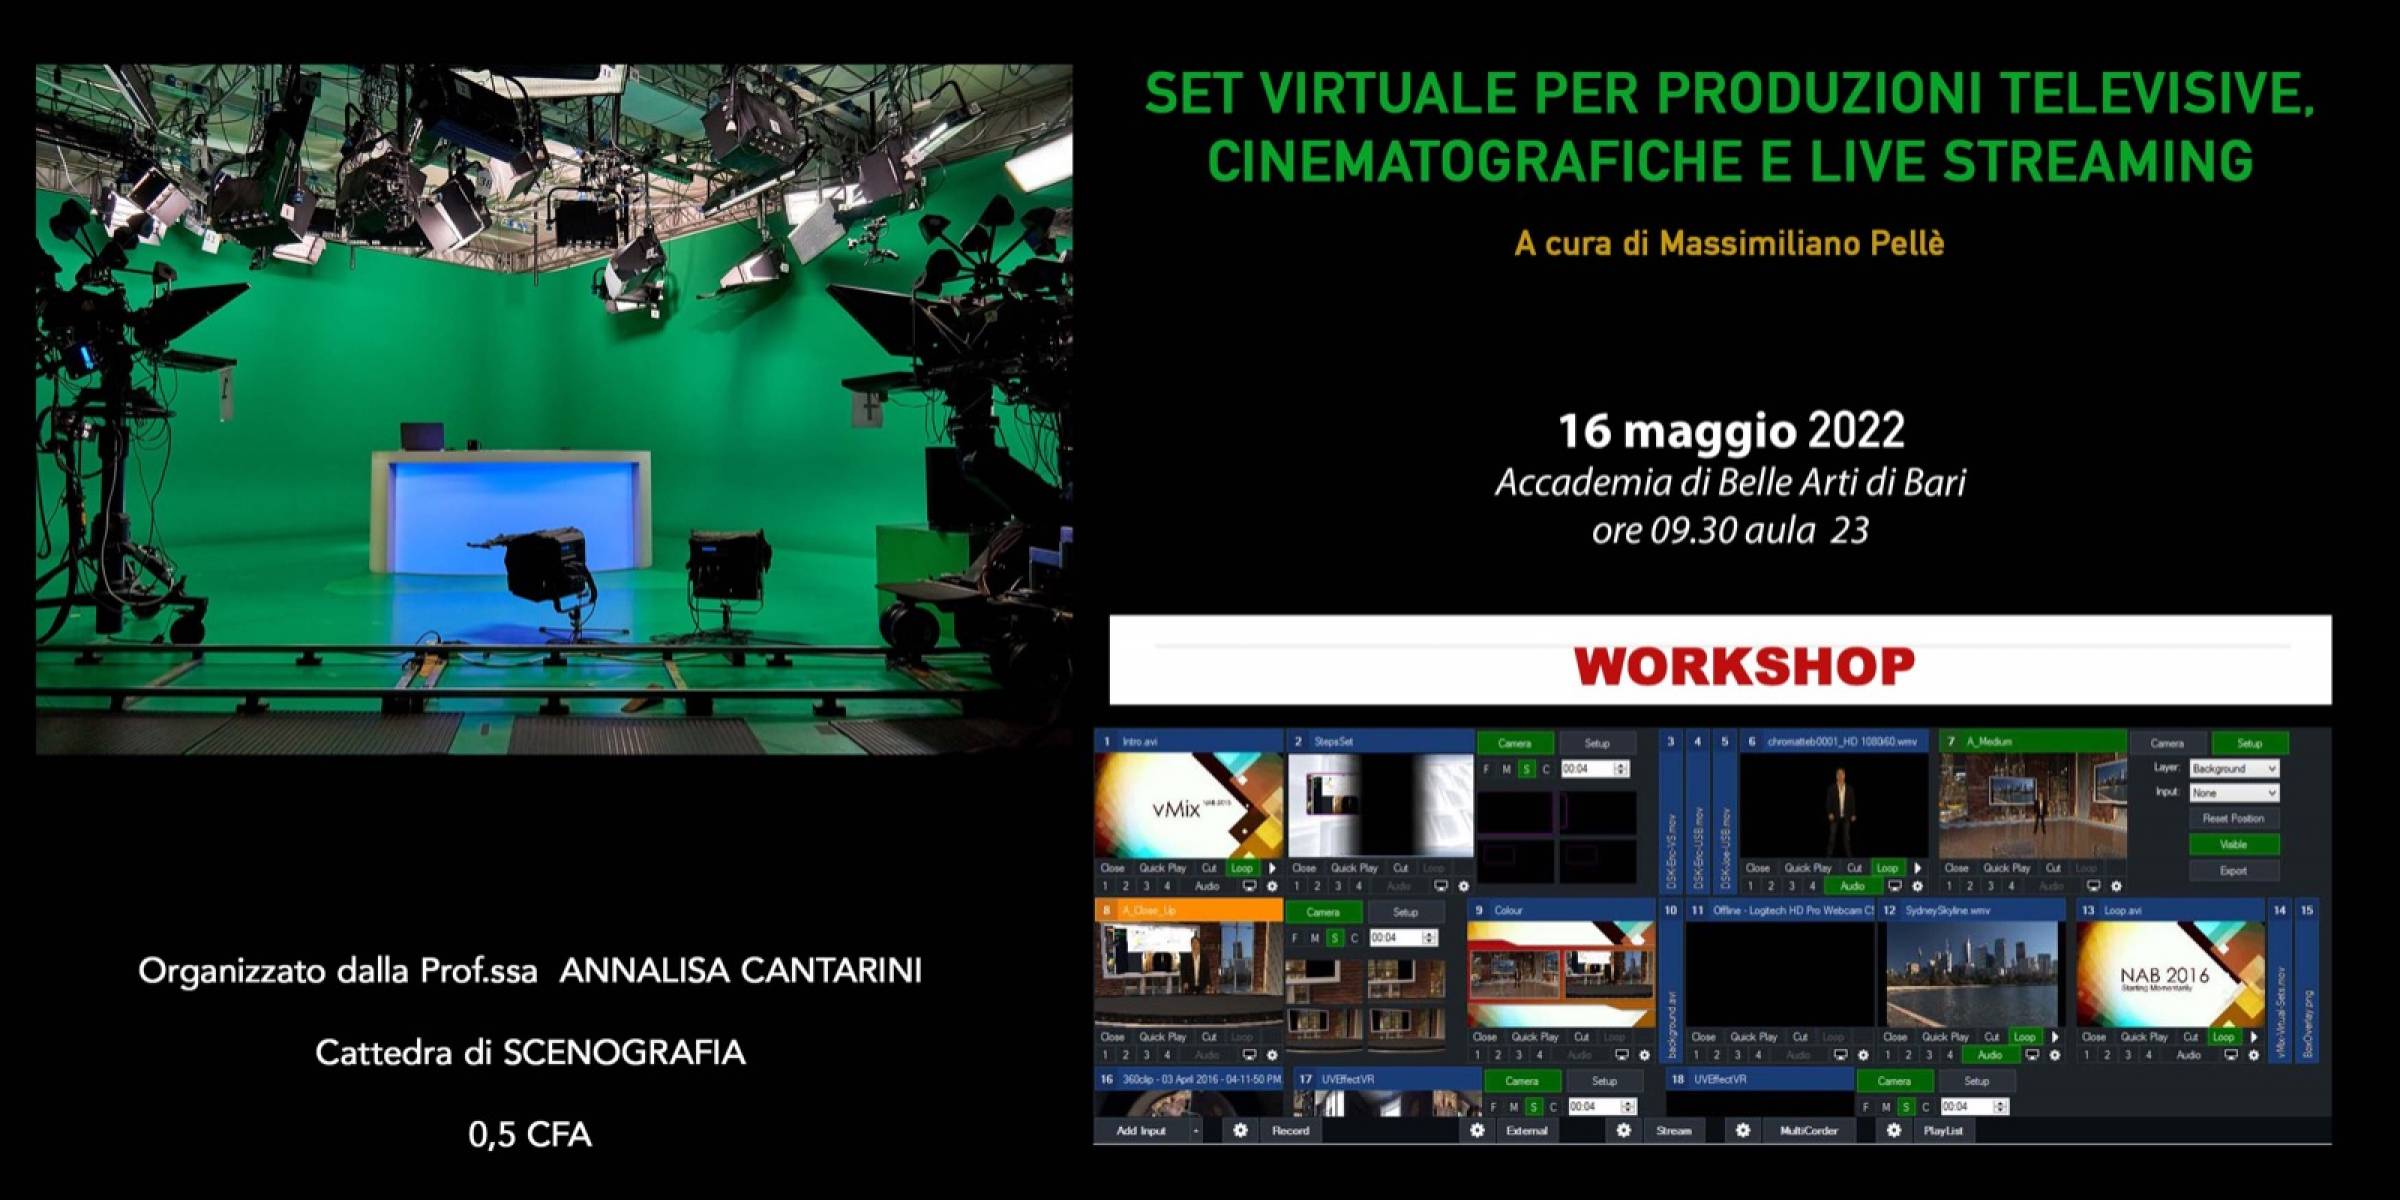 Workshop: Set virtuale per produzioni televisive, cinematografiche e live streaming